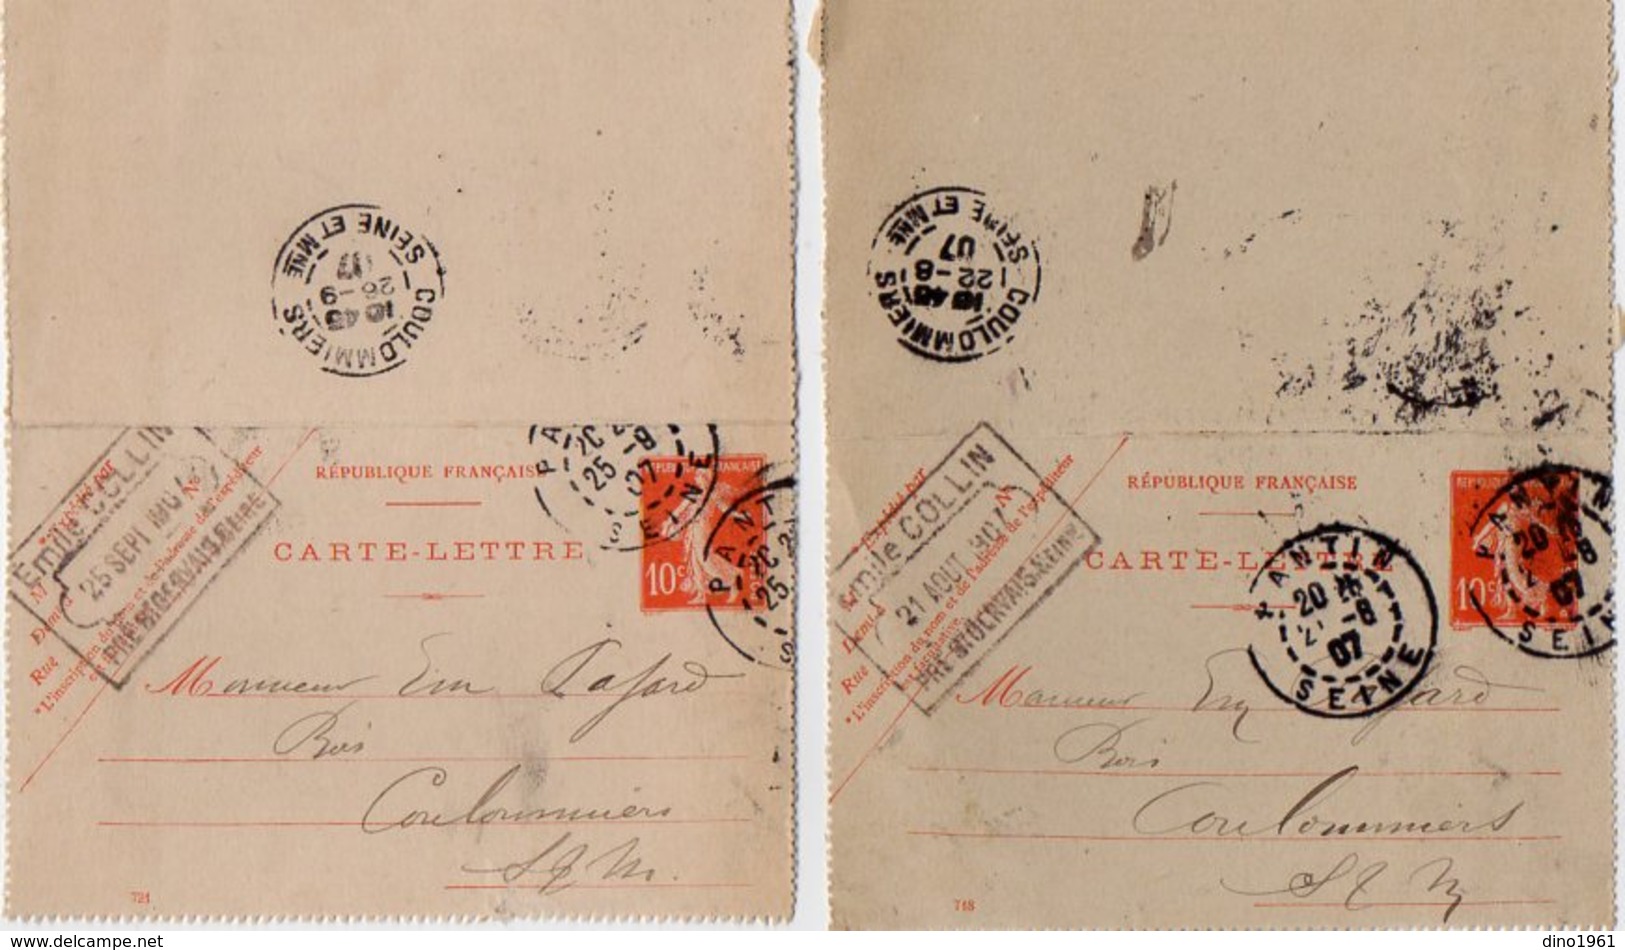 TB 2343 - Entier Postal - Emile COLLIN Au PRE SAINT GERVAIS - MP PANTIN 1907 Pour COULOMMIERS - Kartenbriefe